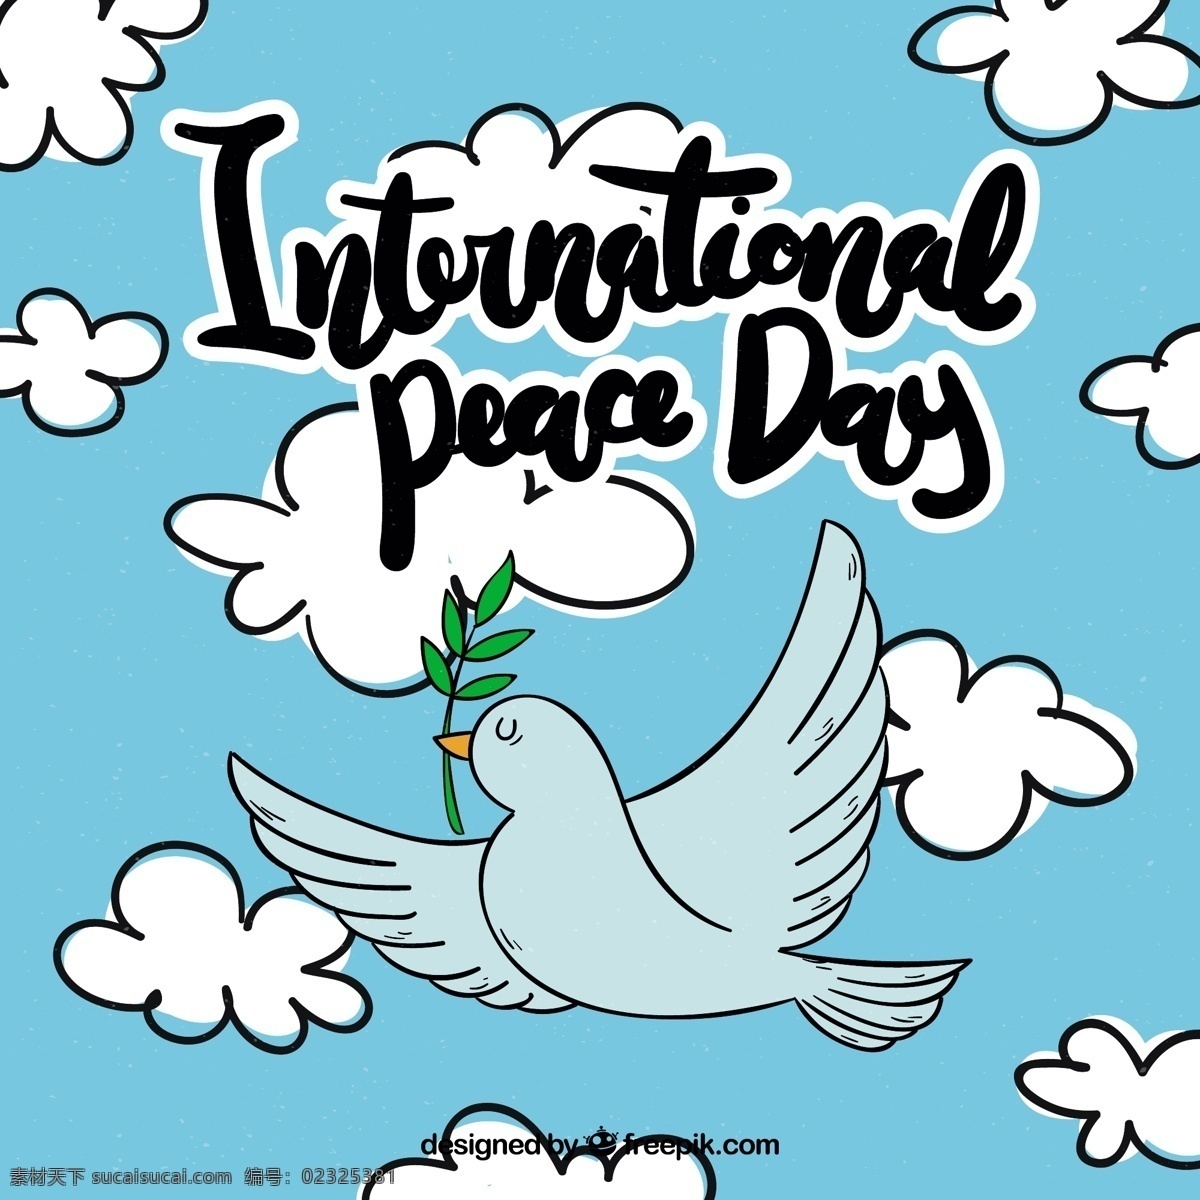 桂花月桂树 手 教育 树叶 蓝色 卡通 天空 世界 手绘 庆祝 快乐 节日 云彩 快乐的假期 绘画 帮助 未来 有趣 和平